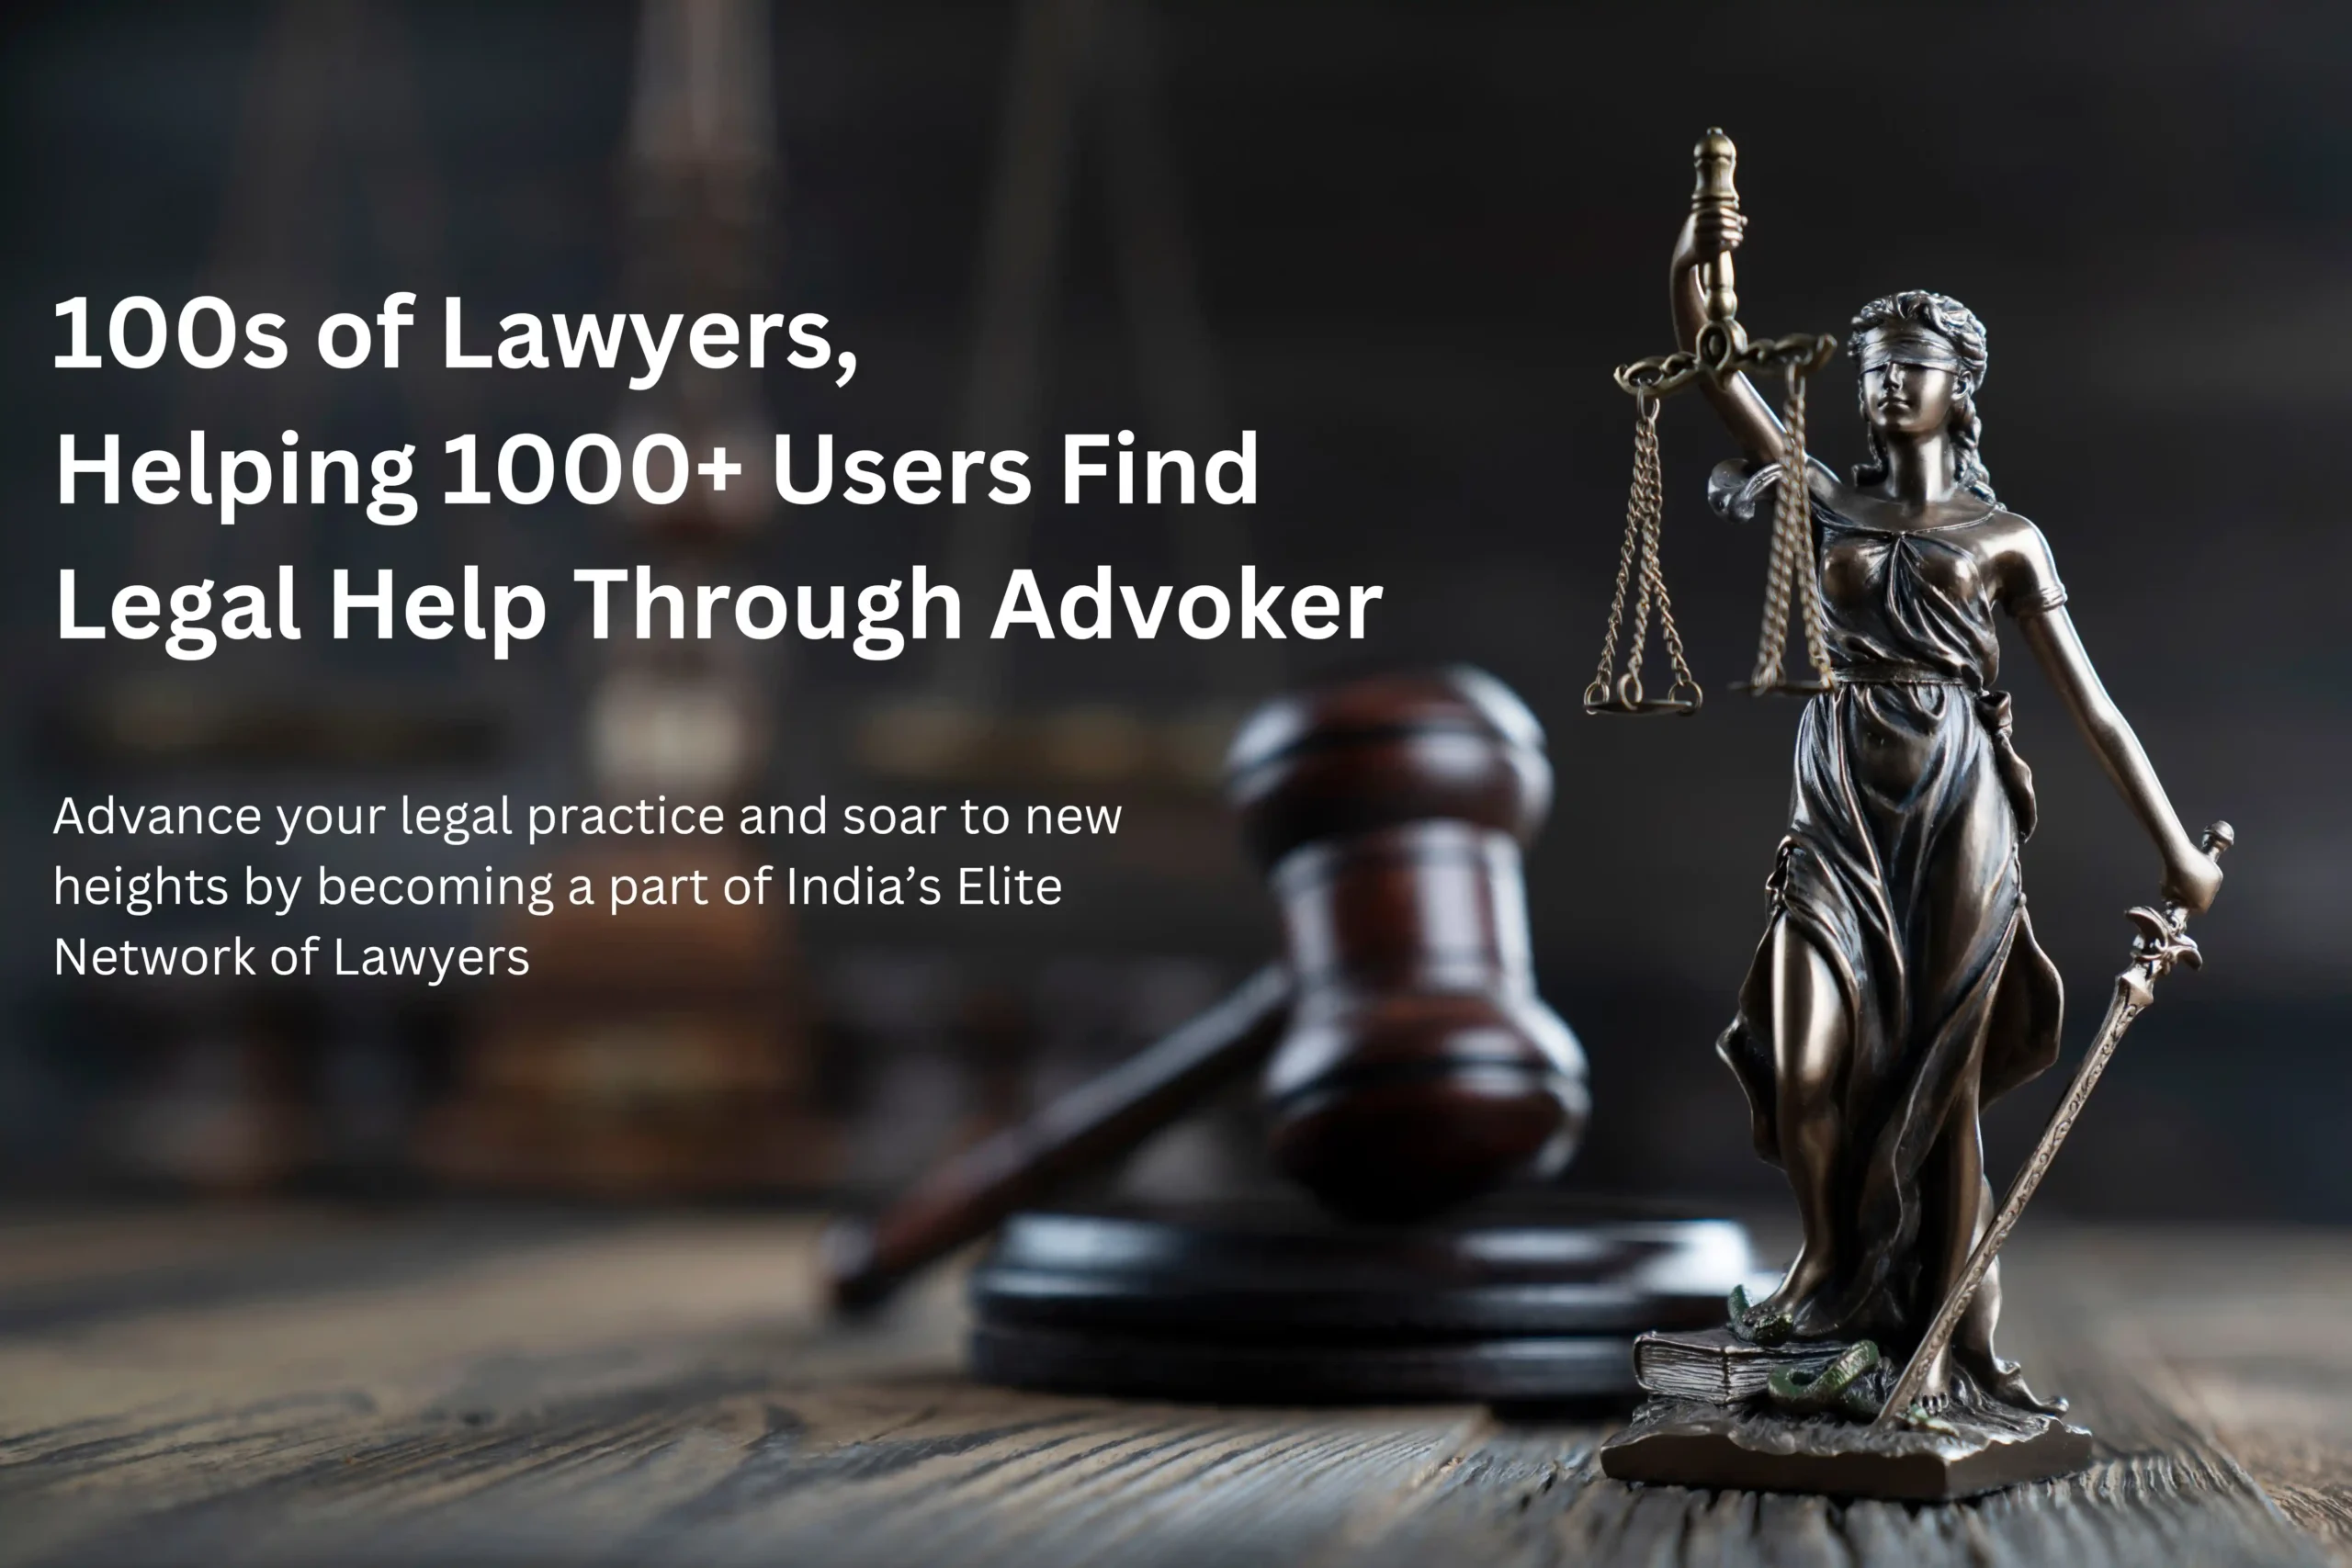 100s of lawyers advoker